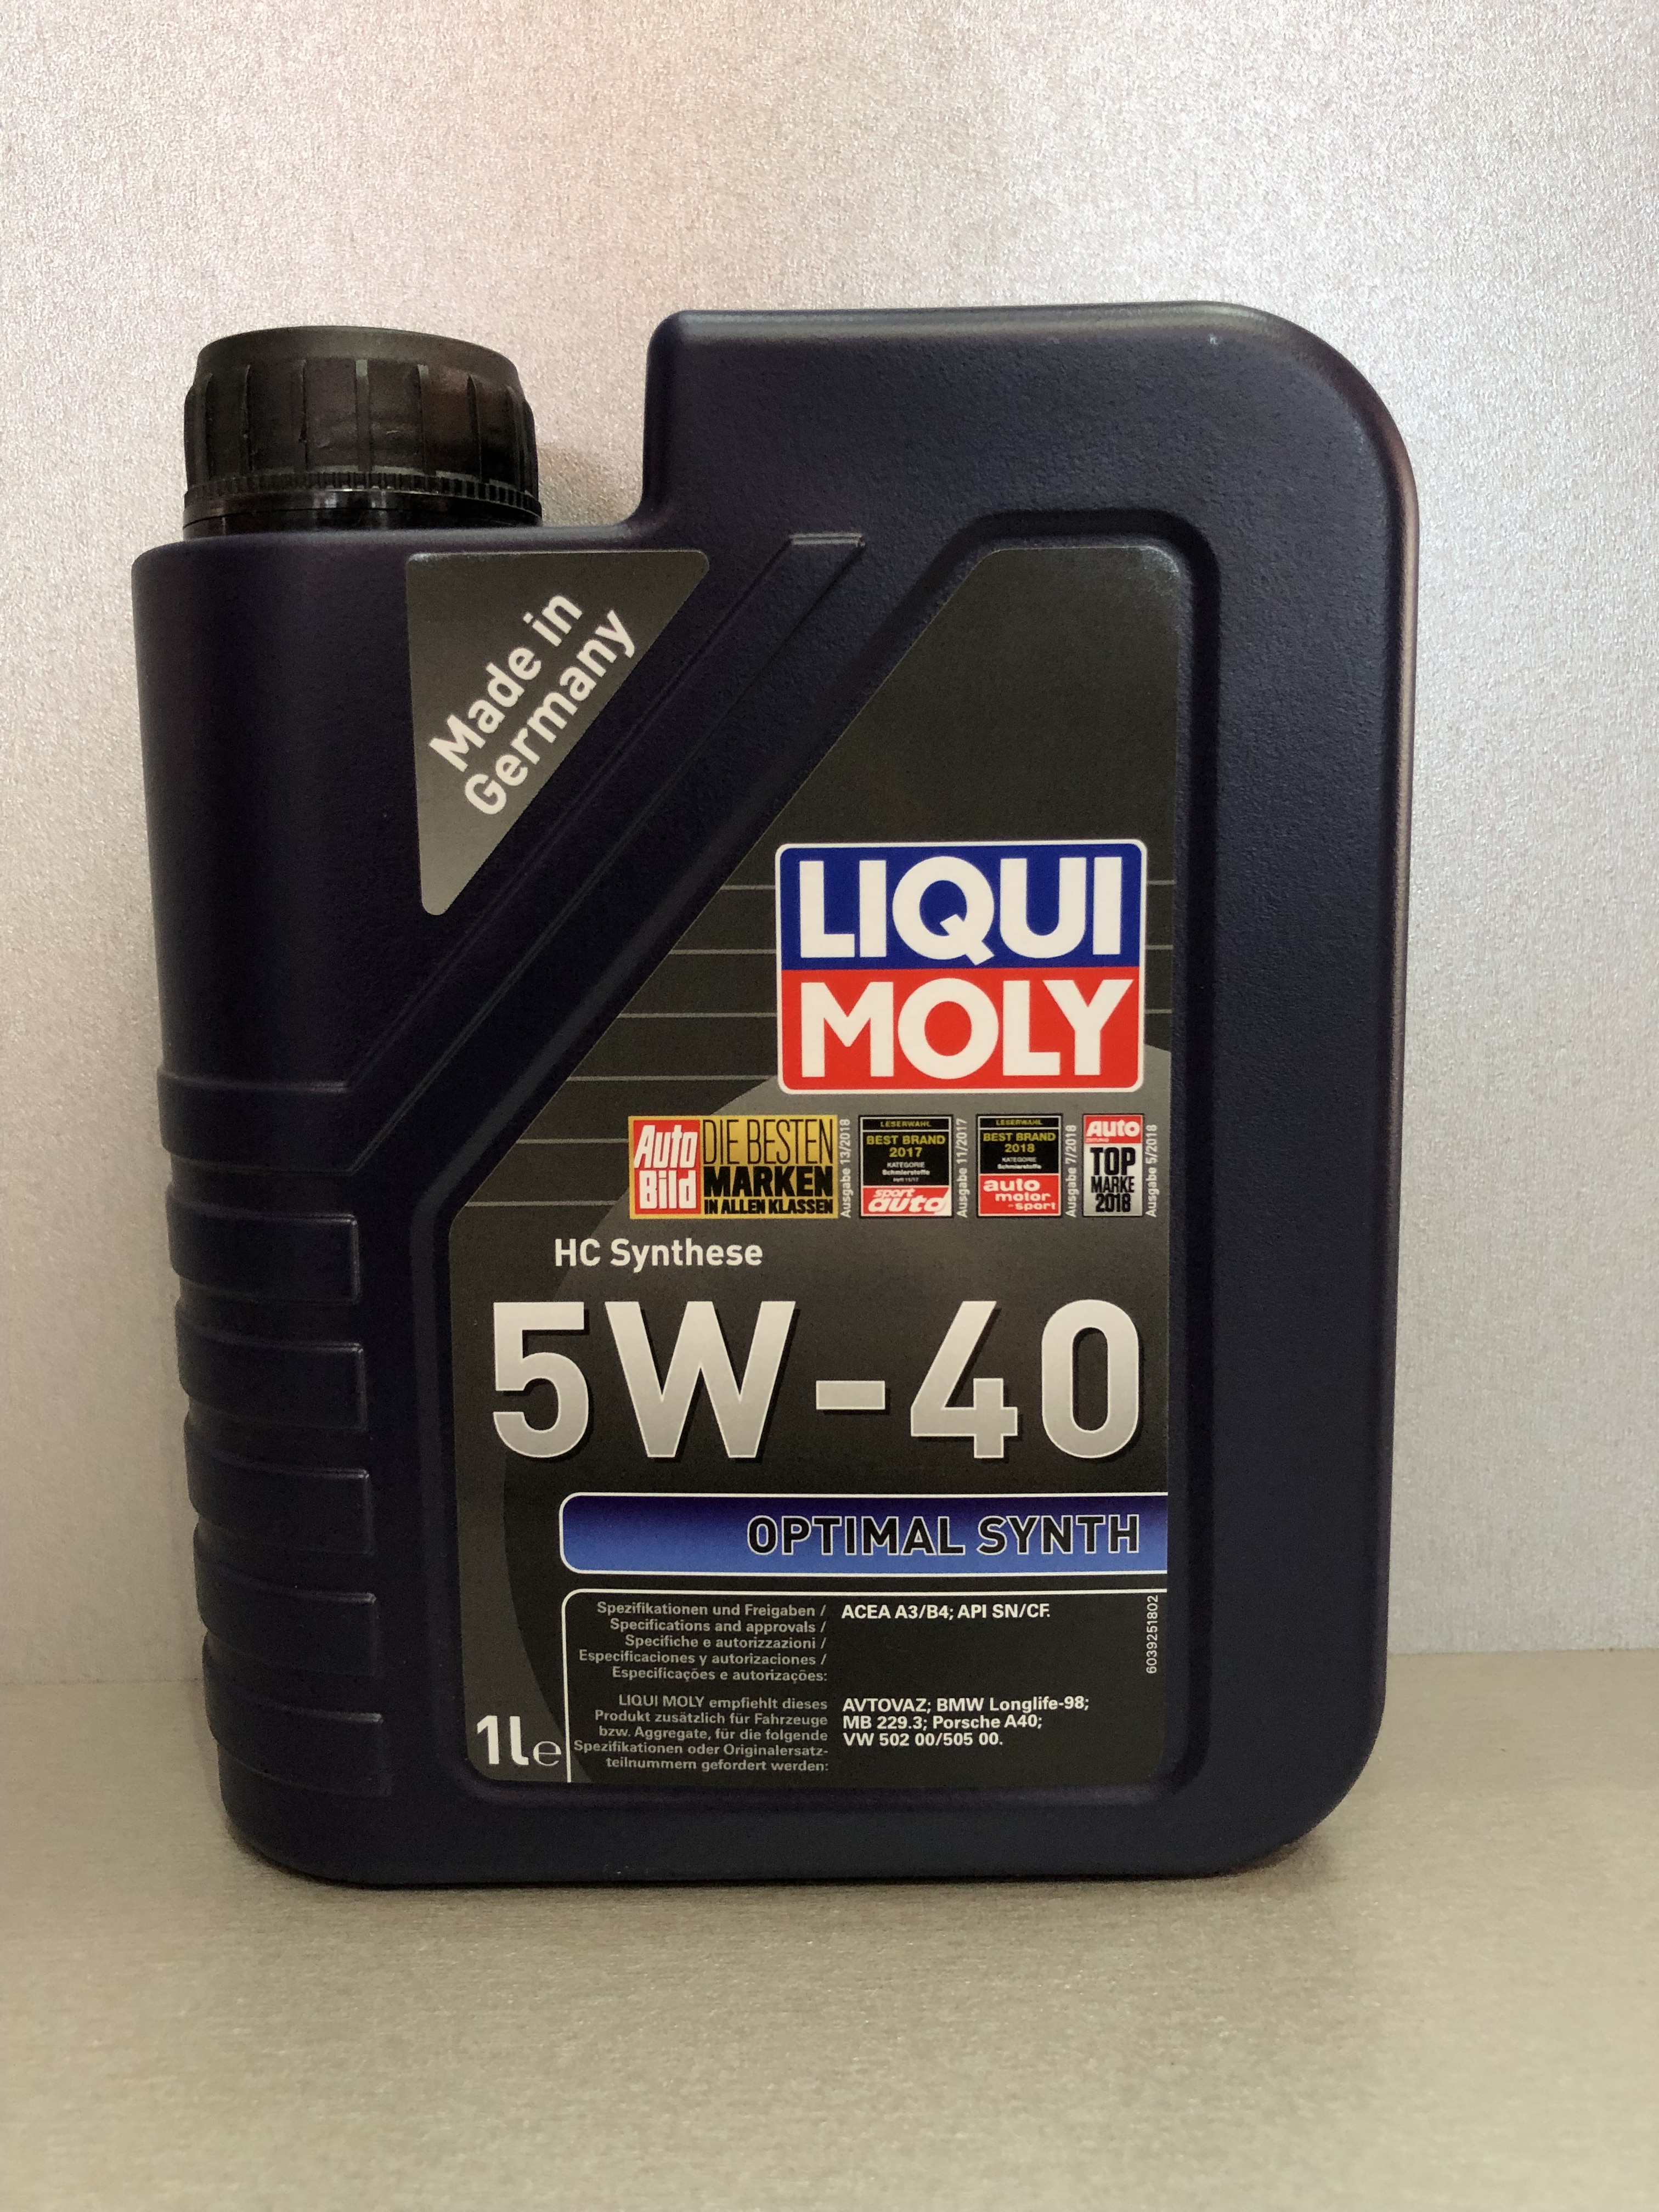 Масло ликви моли оптимал. Синтетическое моторное масло Liqui Moly OPTIMAL Synth 5w-40. Ликви Молли 10 w 40 OPTIMAL. Liqui Moly 5w40 OPTIMAL Synth 1л. Ликви моли 10w 40 полусинтетика Оптимал.